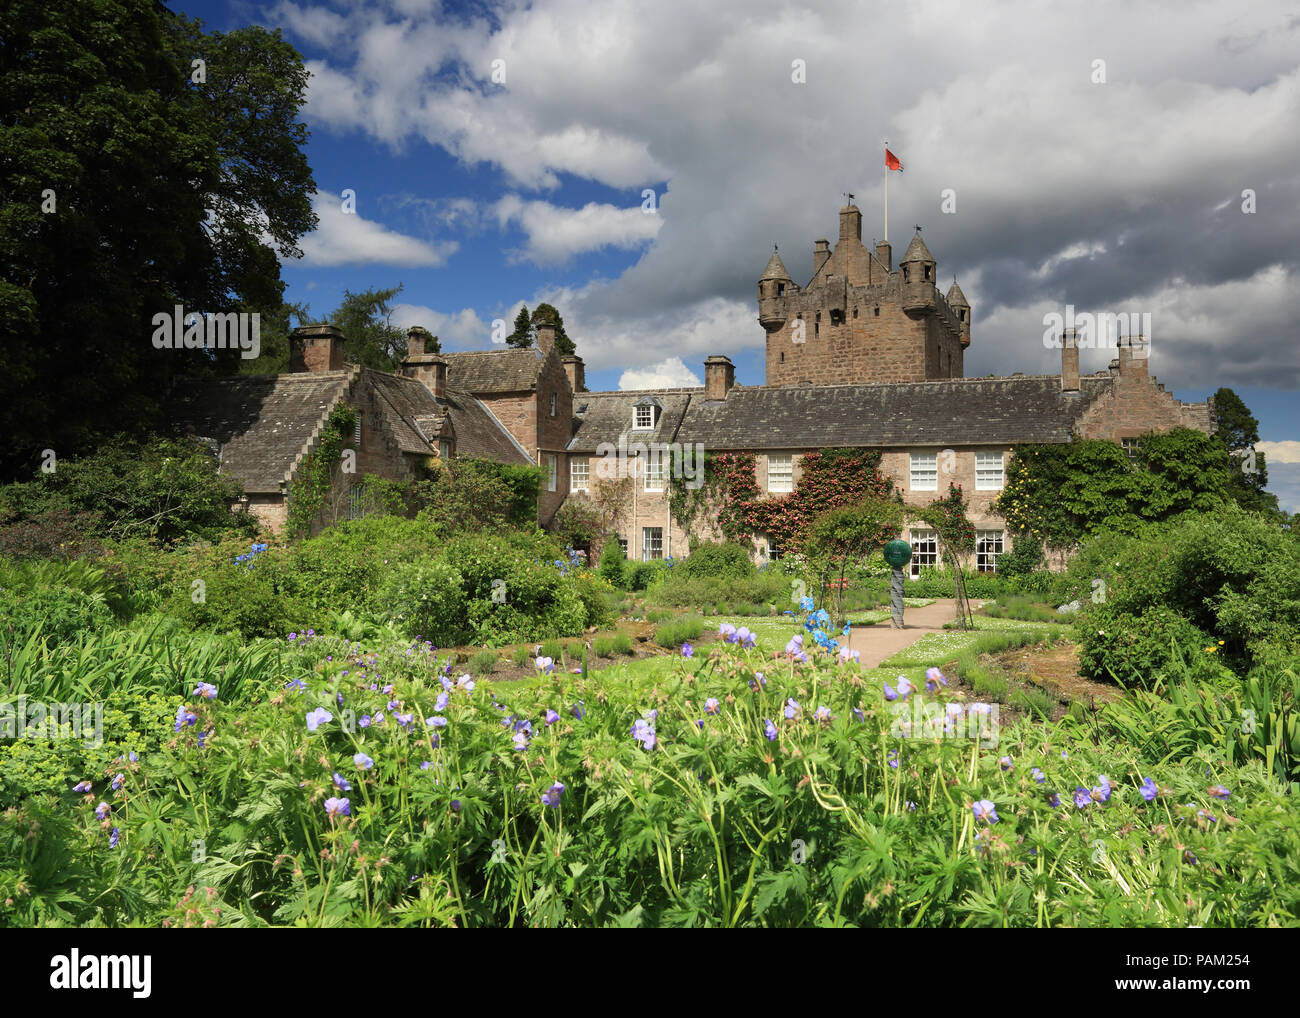 Le Château de Cawdor et jardin sur une journée ensoleillée Banque D'Images